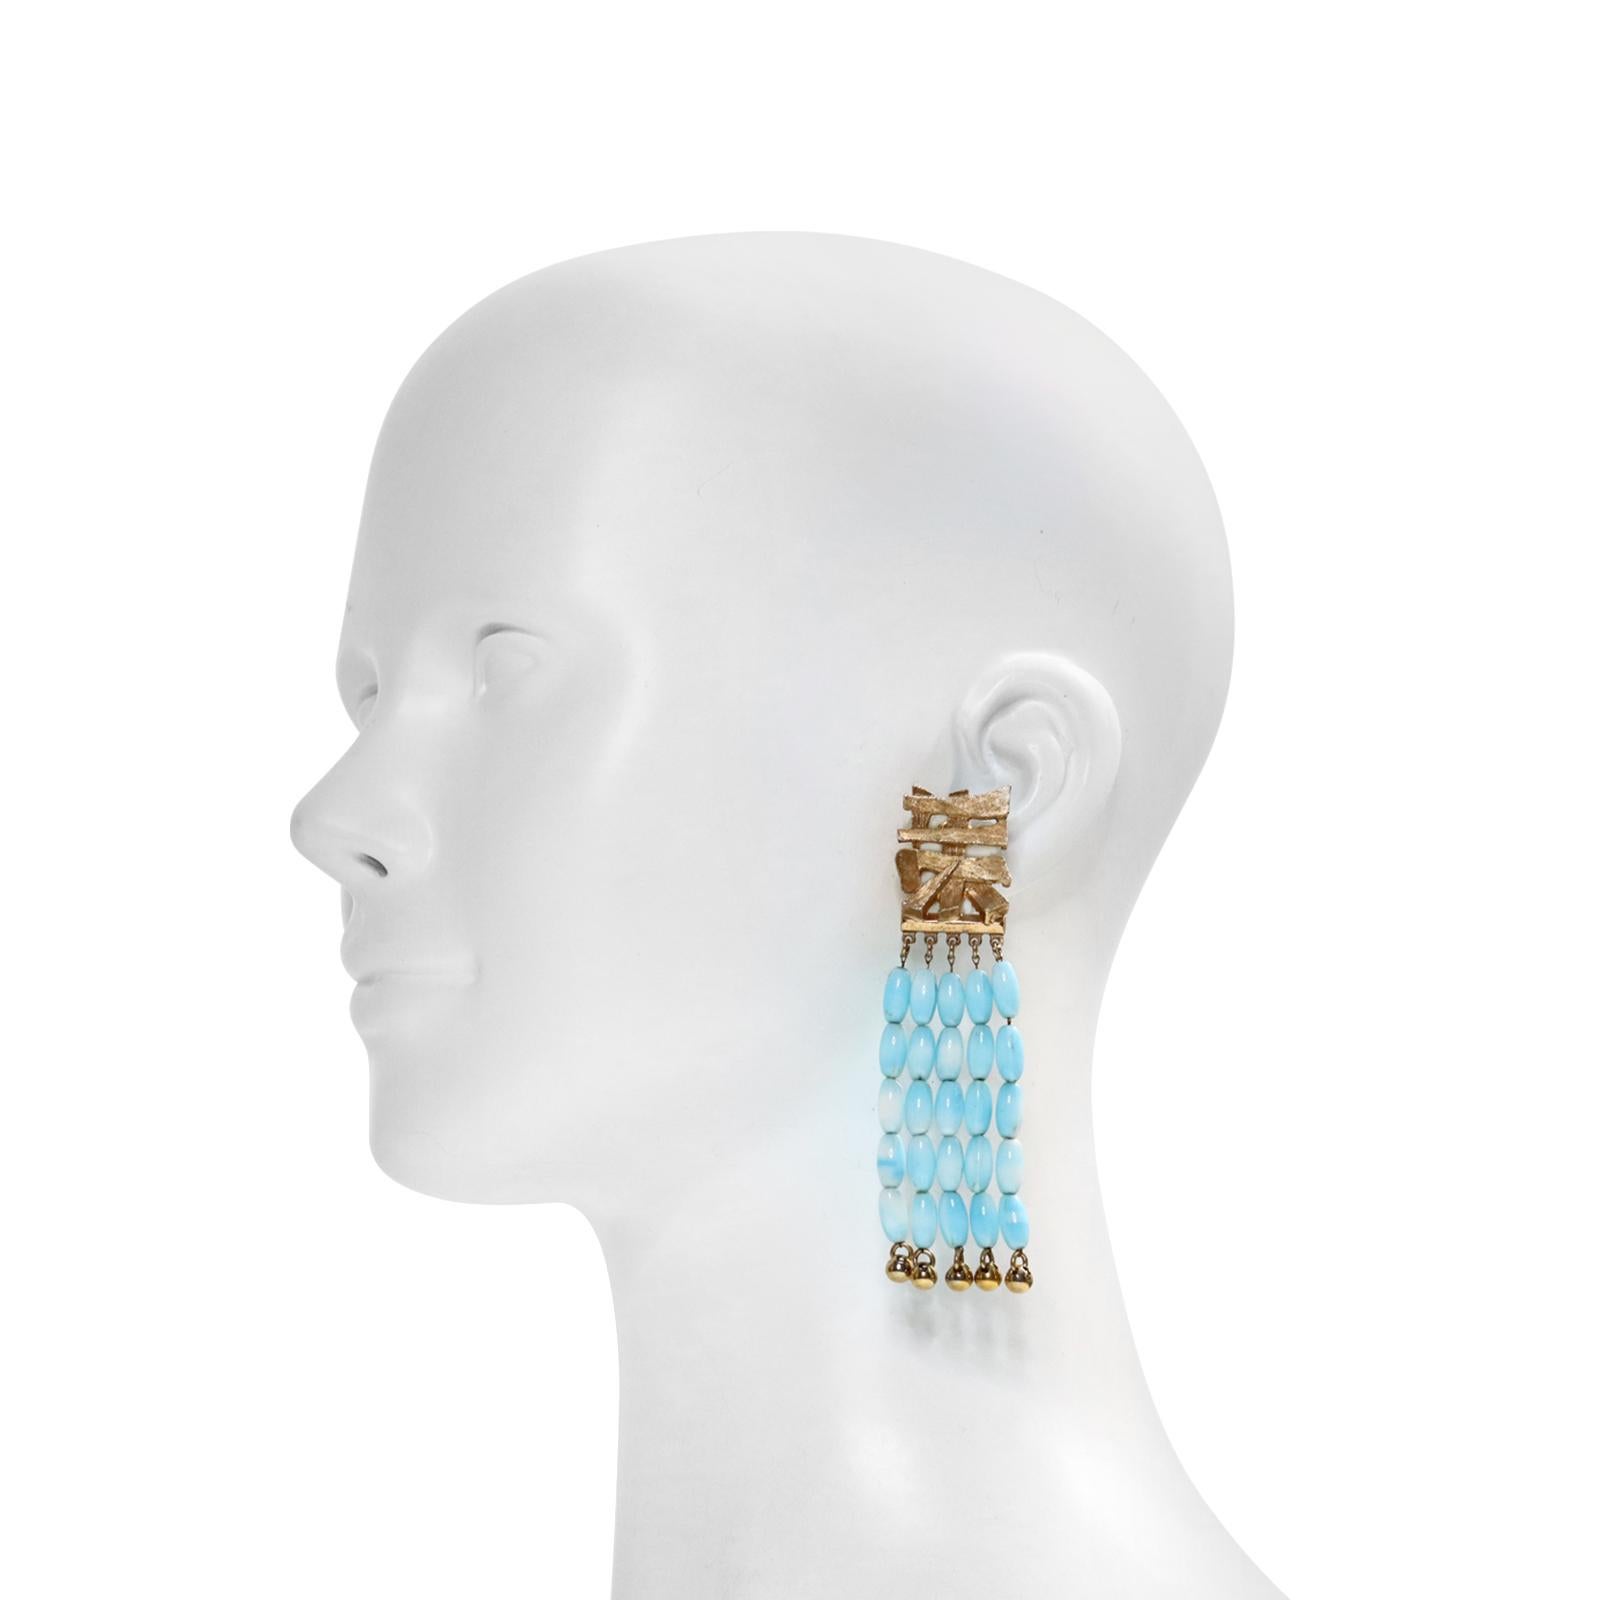 Vintage Napier Gold Tone with Faux Turquoise Dangling Beads. Il y a 4 rangées de perles pendantes attachées à un motif asiatique.  Clip sur.

Cette collection était très recherchée et l'est toujours. Ils sont tellement magnifiques en personne. 